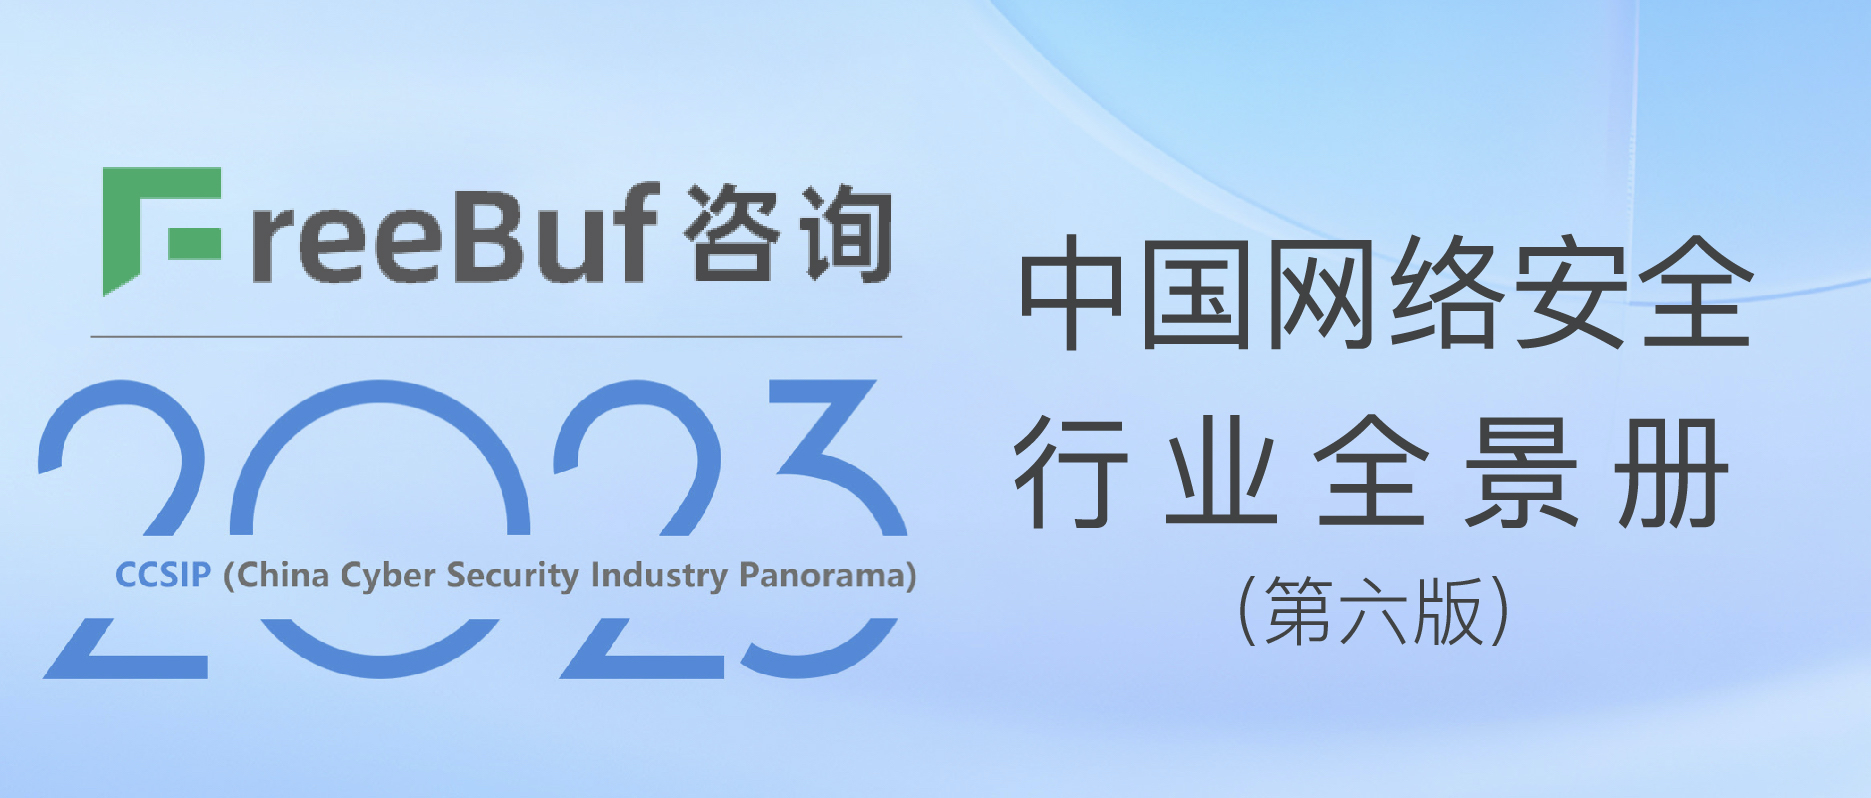 CCSIP 2023中國網絡安全行業全景冊（第六版）正式發布，上訊信息入選50項細分領域